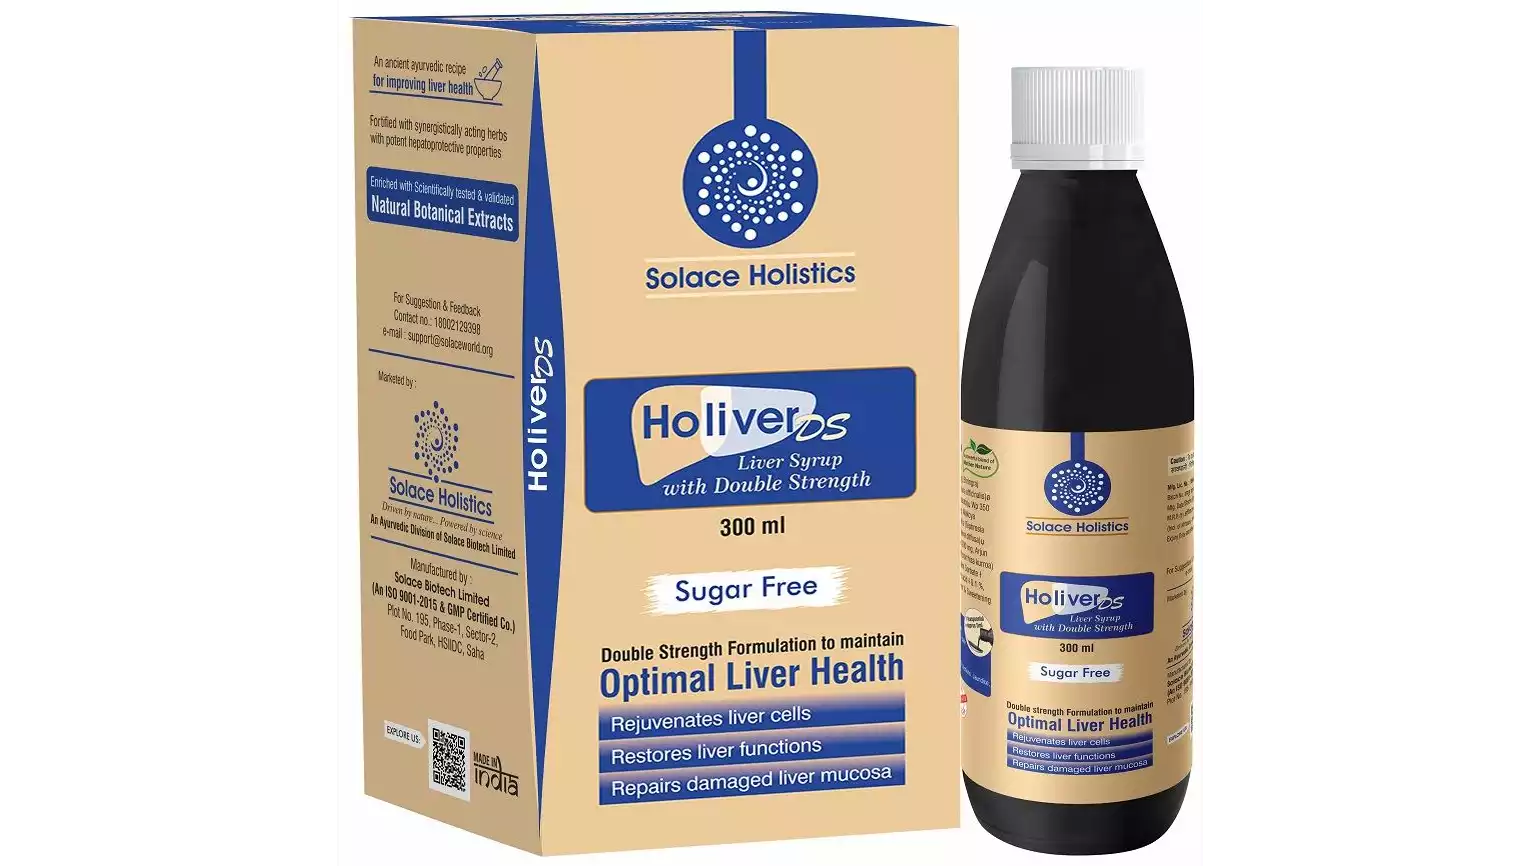 Solace Holistics Holiver DS Liver Syrup Sugar Free (300ml)